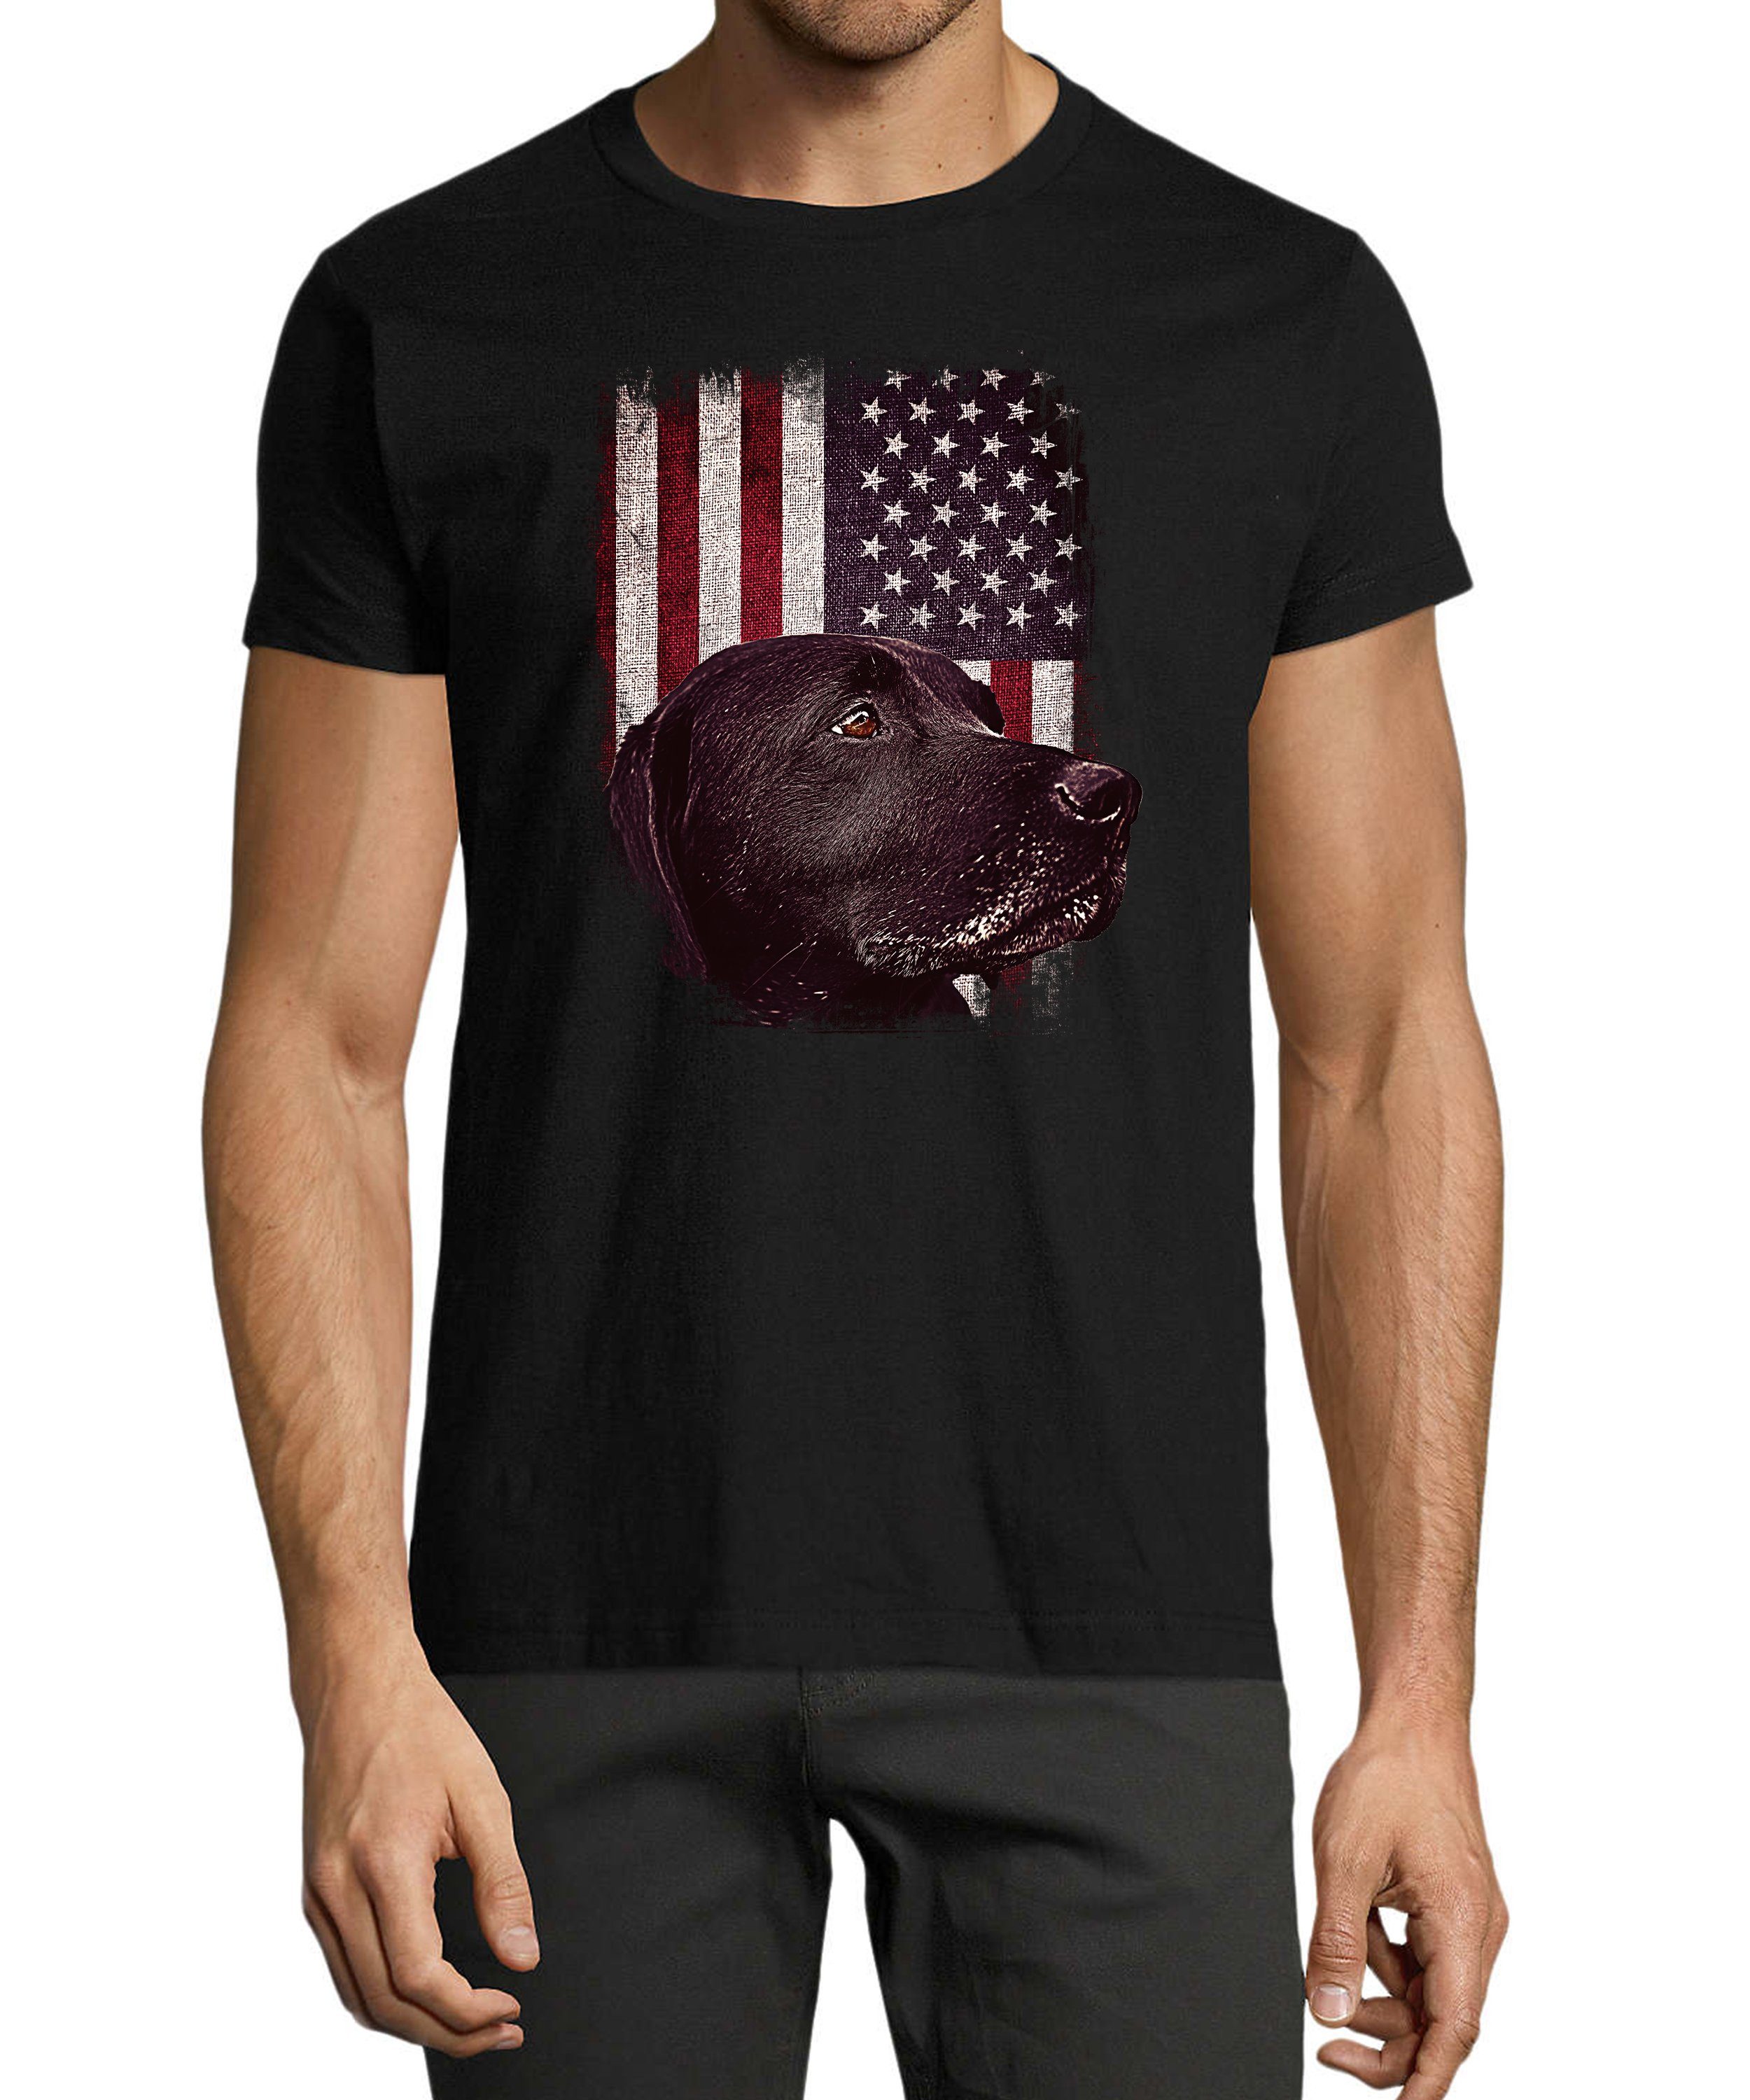 MyDesign24 T-Shirt Herren Hunde Print Shirt - Schwarzer Labrador vor USA Flagge Baumwollshirt mit Aufdruck Regular Fit, i246